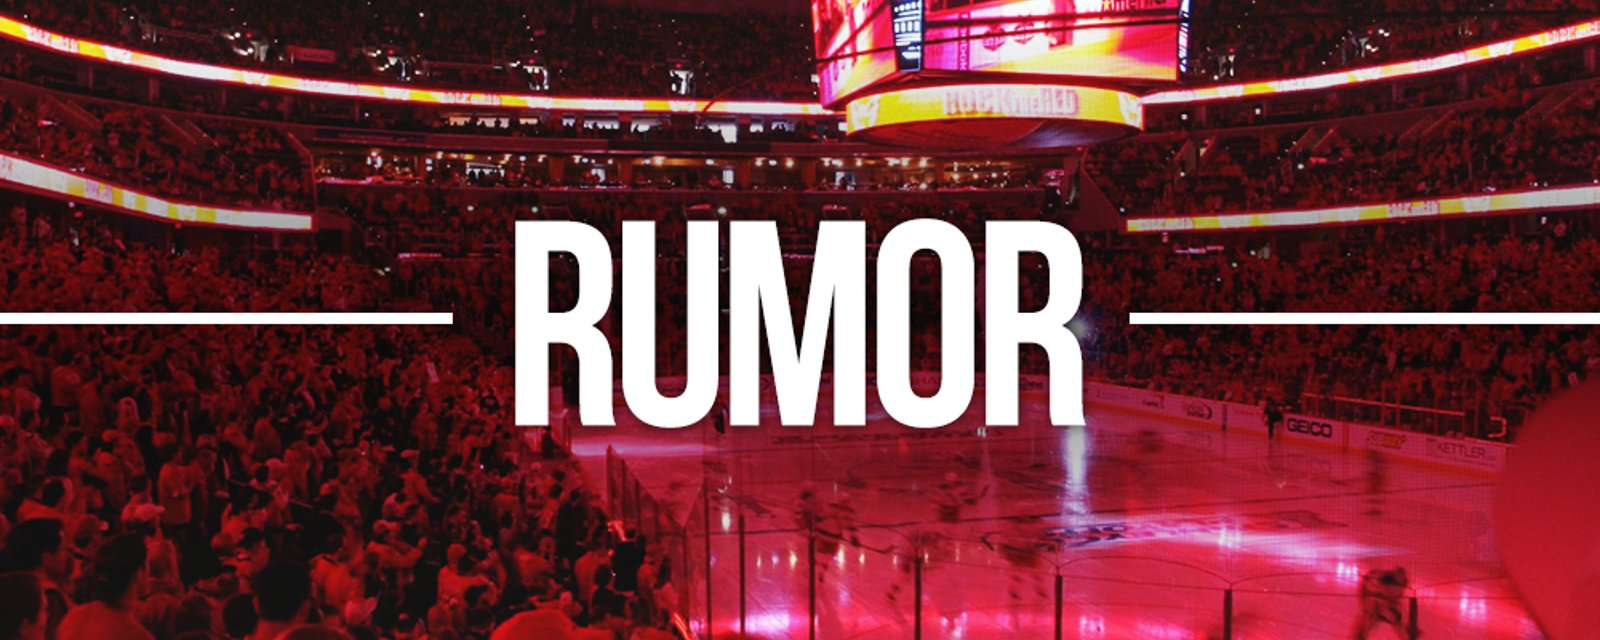 Team owner accuses NHL of having Penguins bias